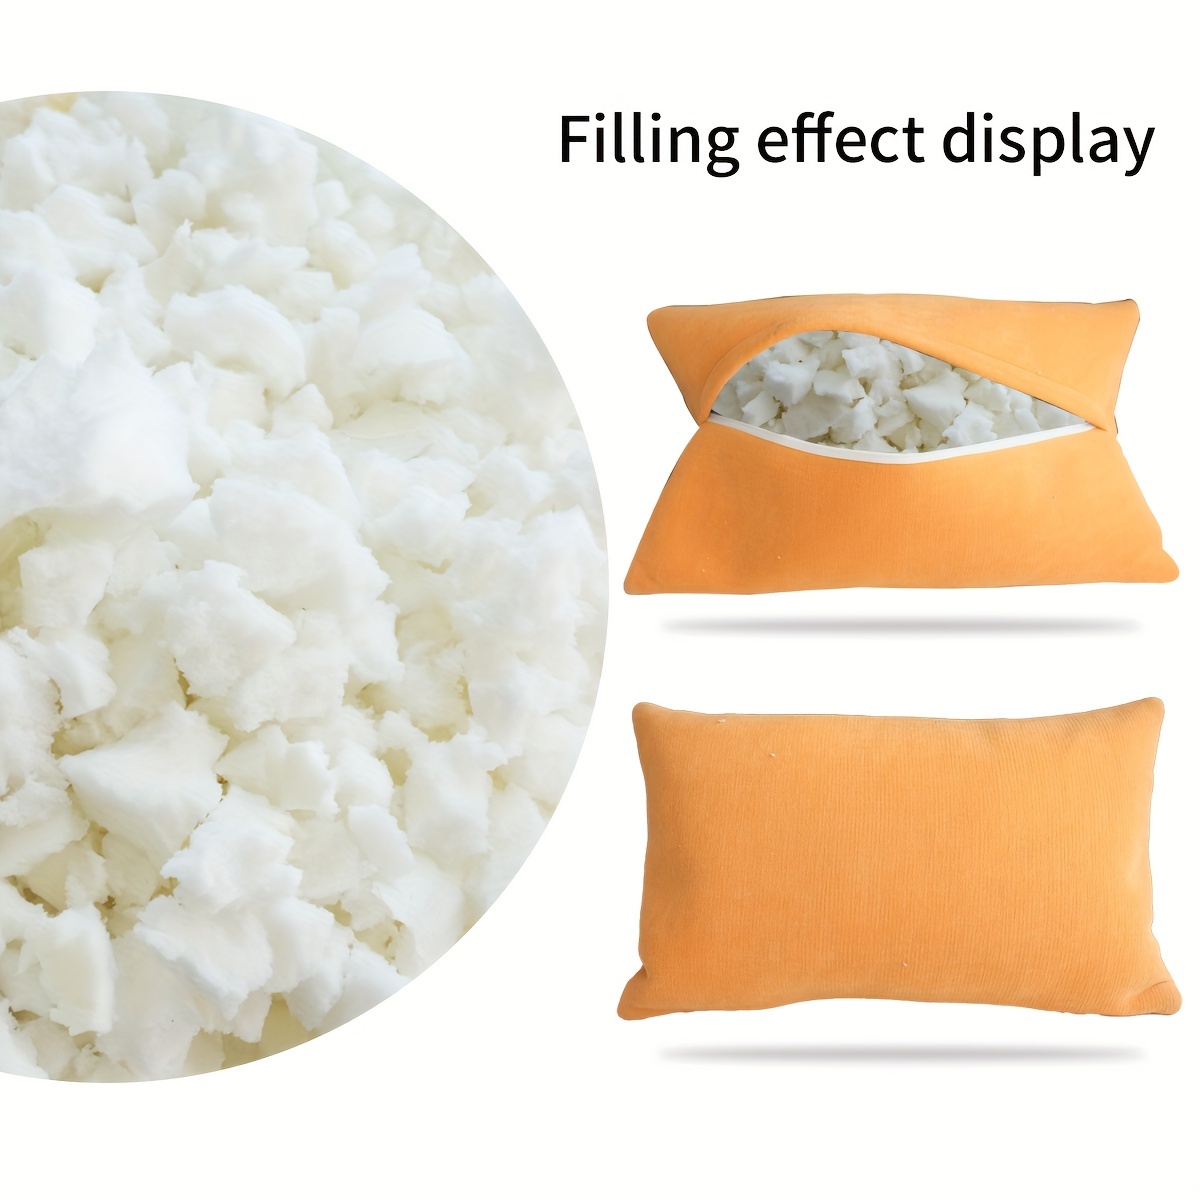 5lbs Filling Memory Foam Crumbs High Elastic Sofa Pillow - Temu